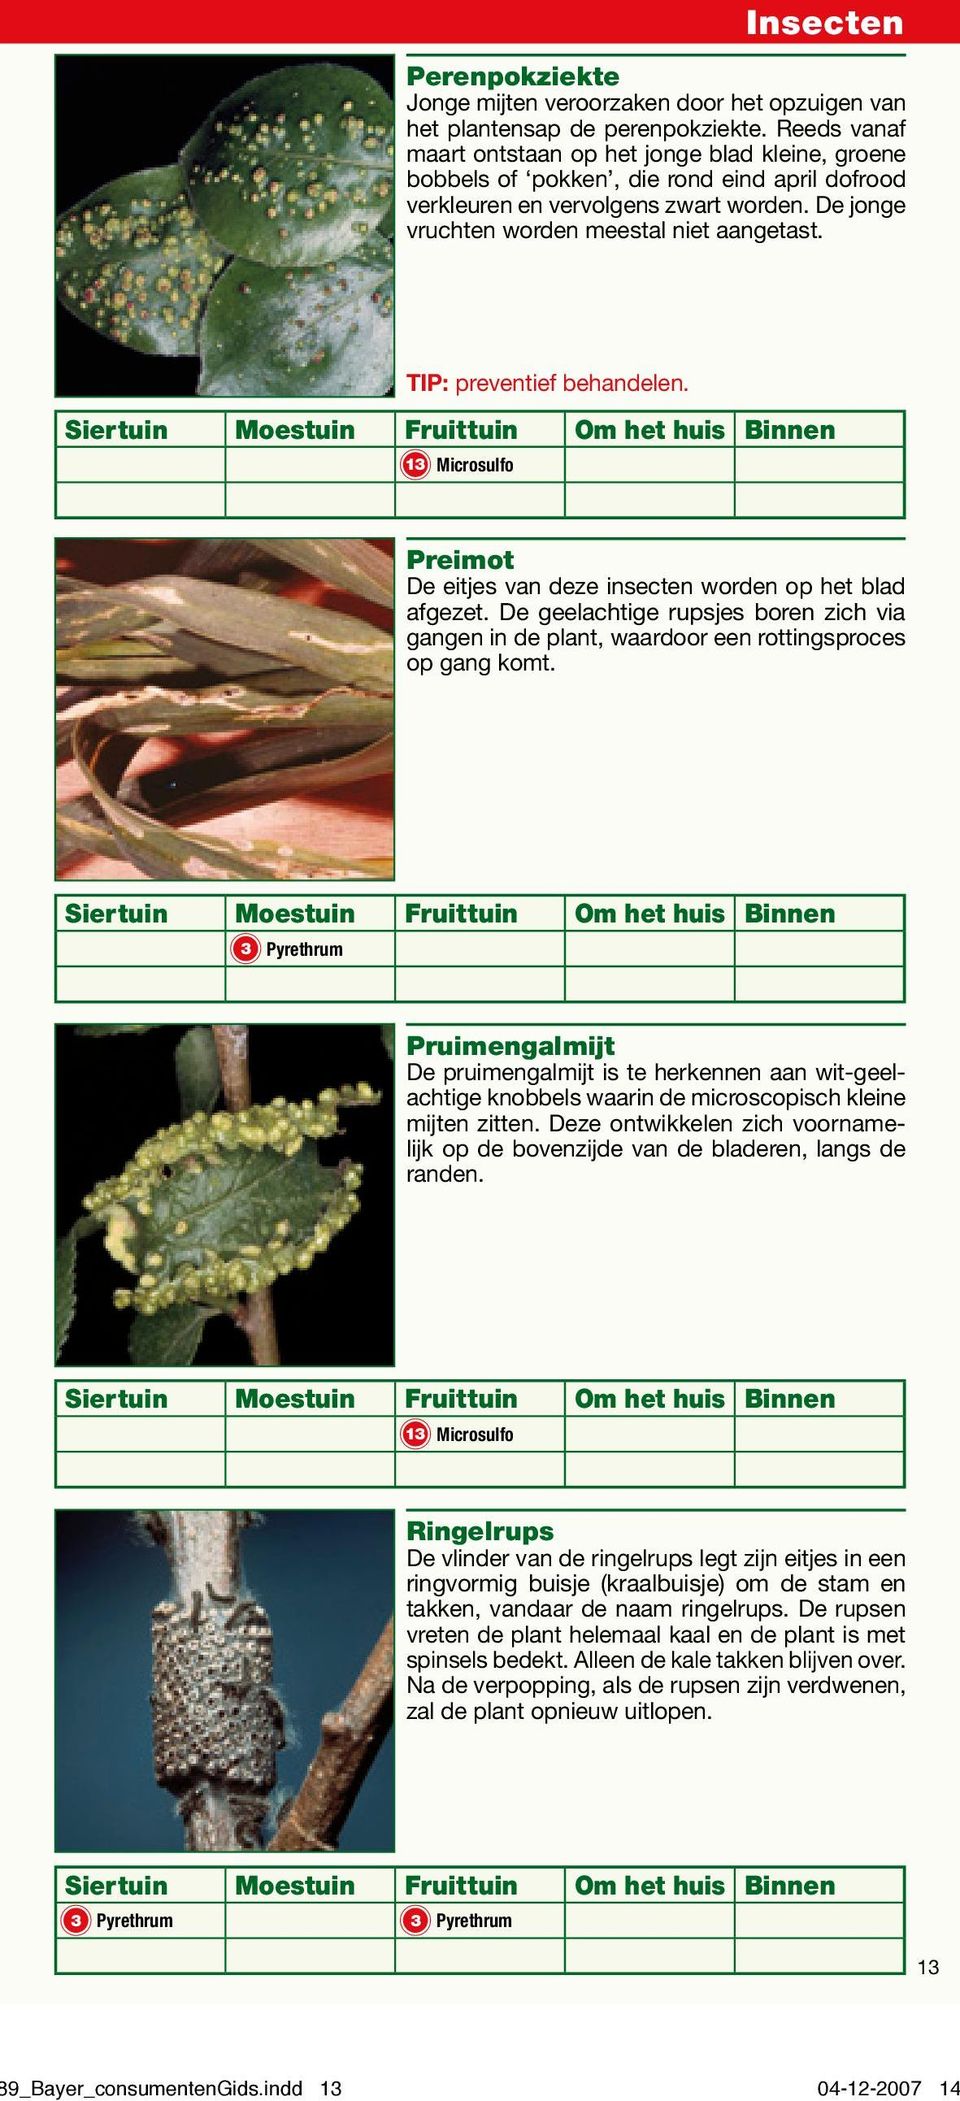 TIP: preventief behandelen. 13 Microsulfo Preimot De eitjes van deze insecten worden op het blad afgezet.